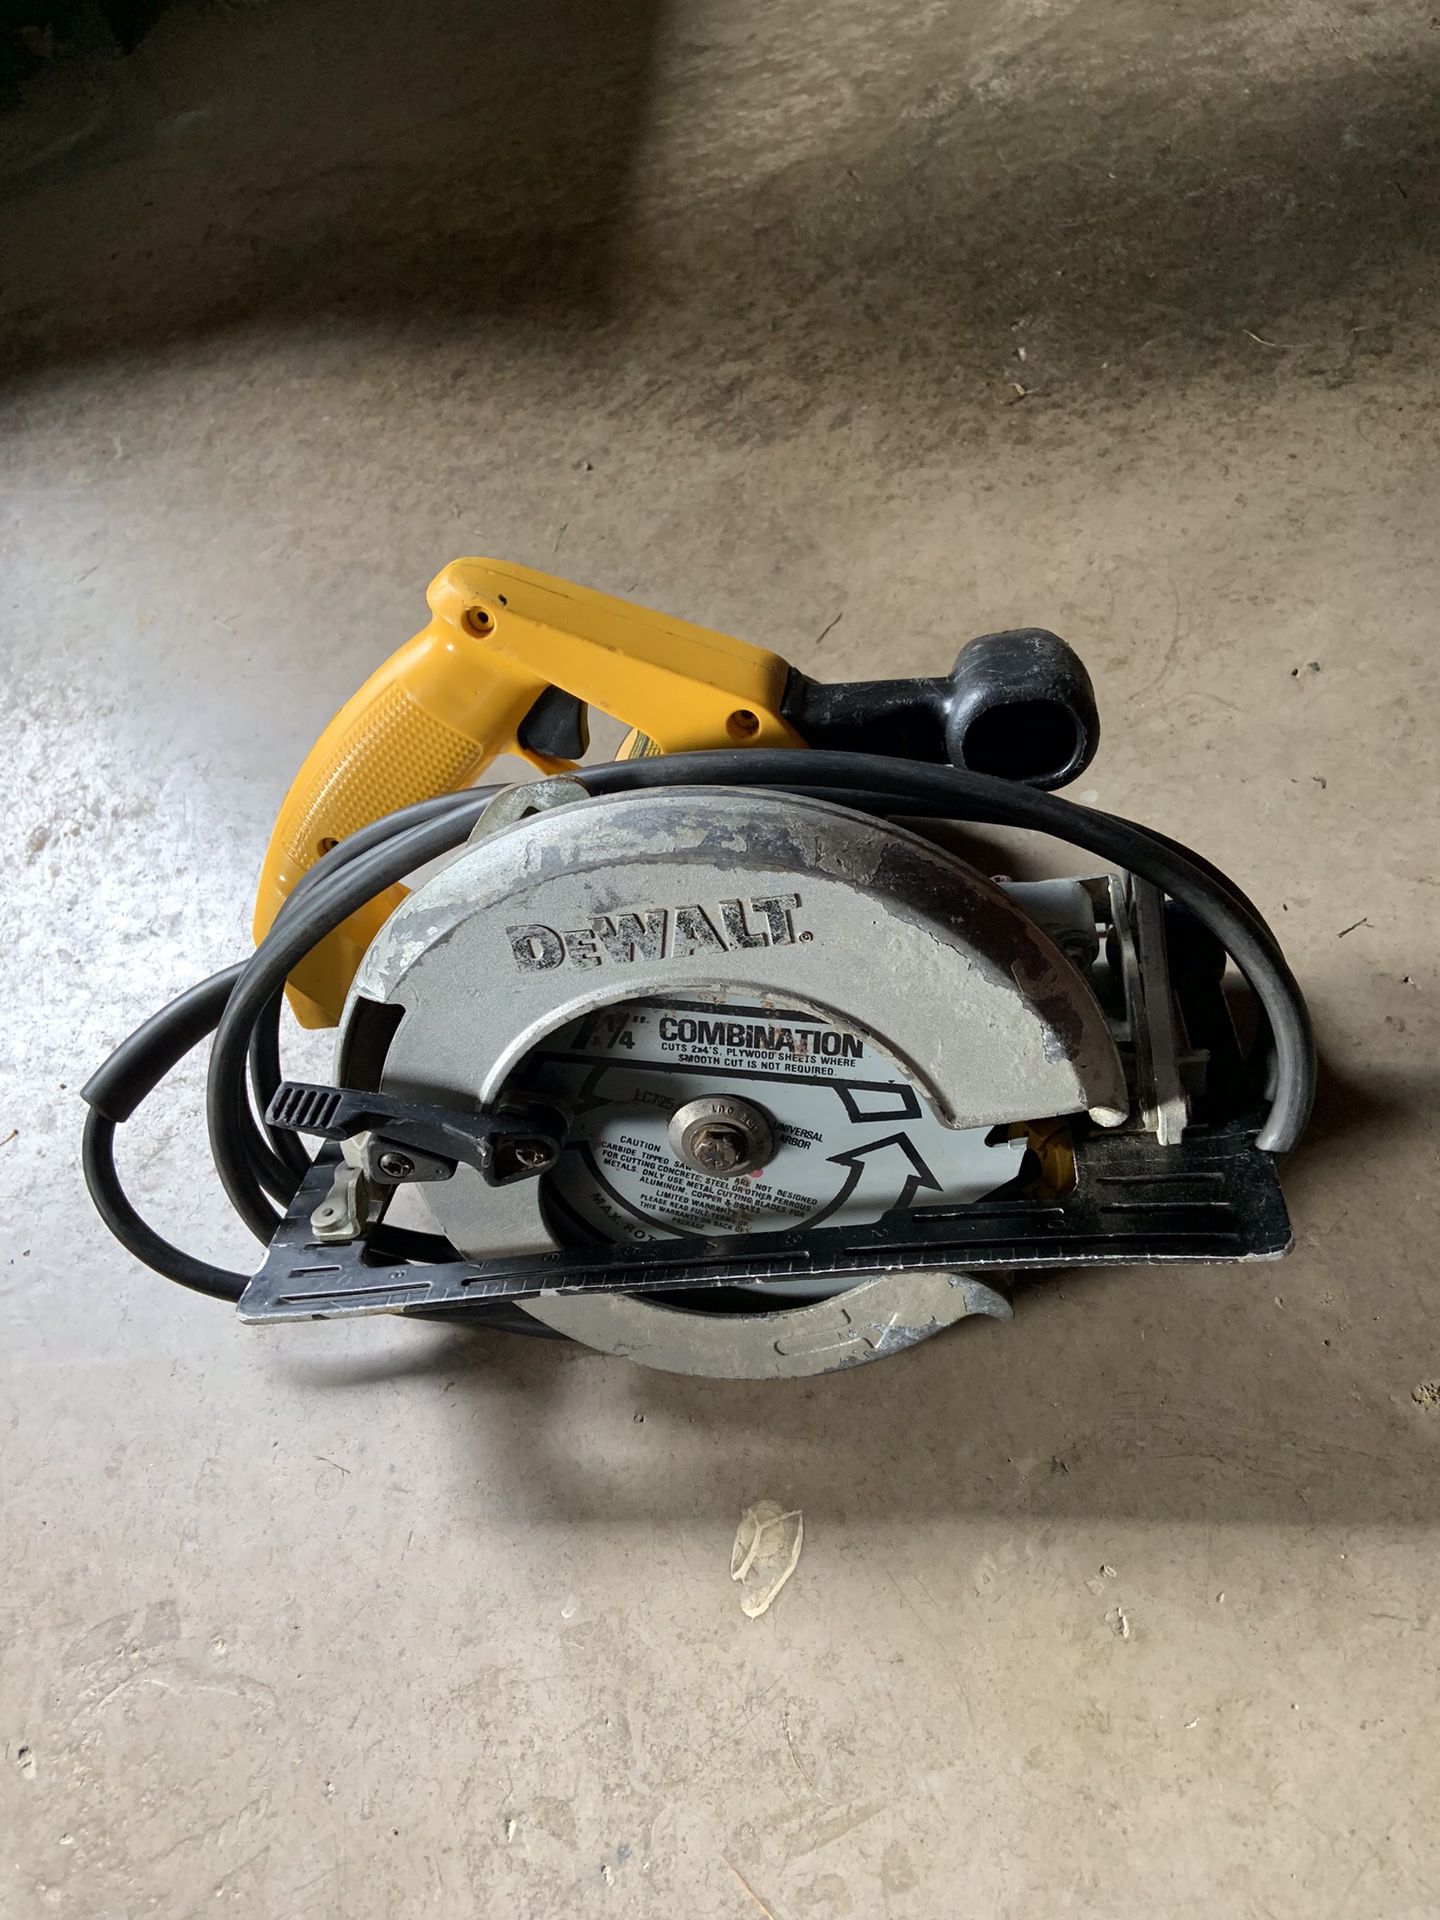 Dewalt 7 1/4” circular saw